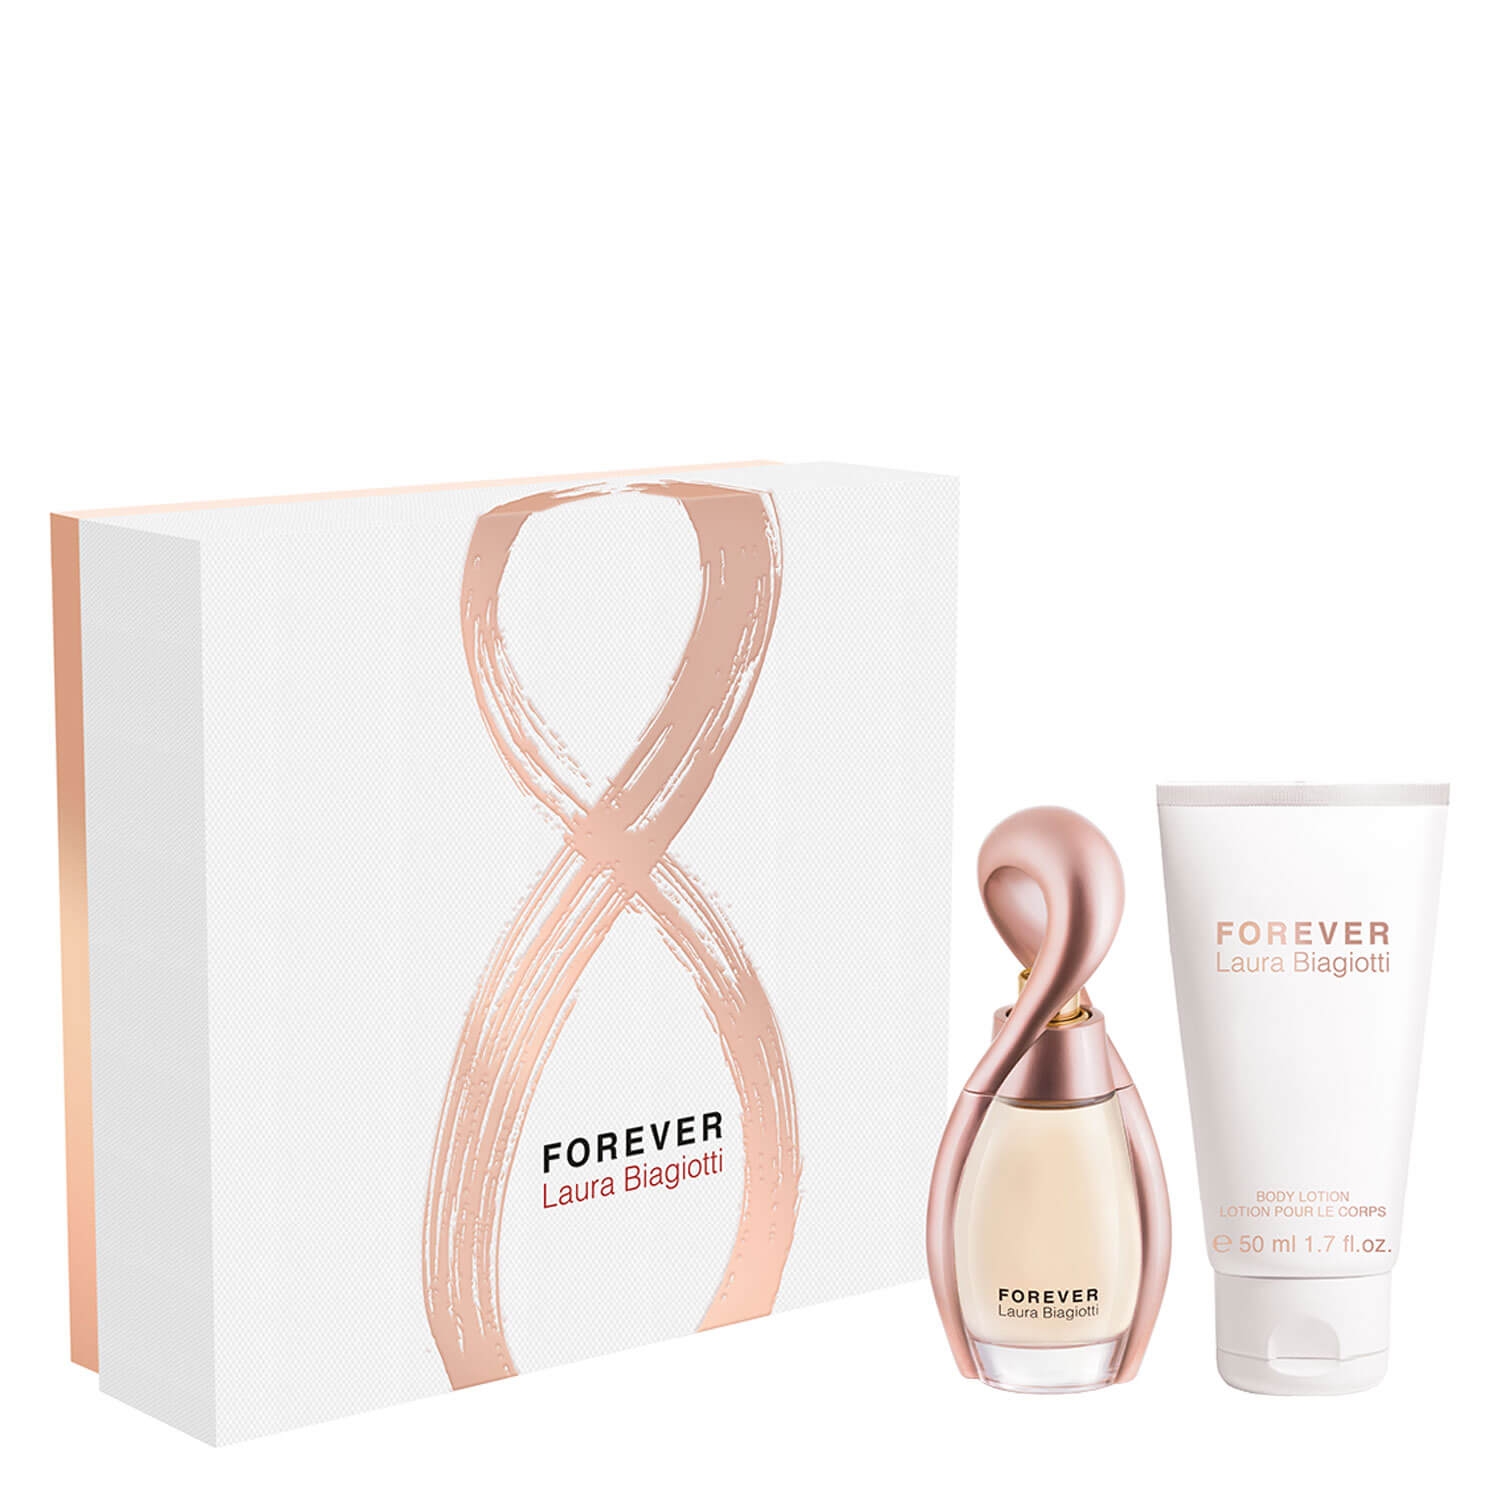 Produktbild von Forever - Eau de Parfum Set